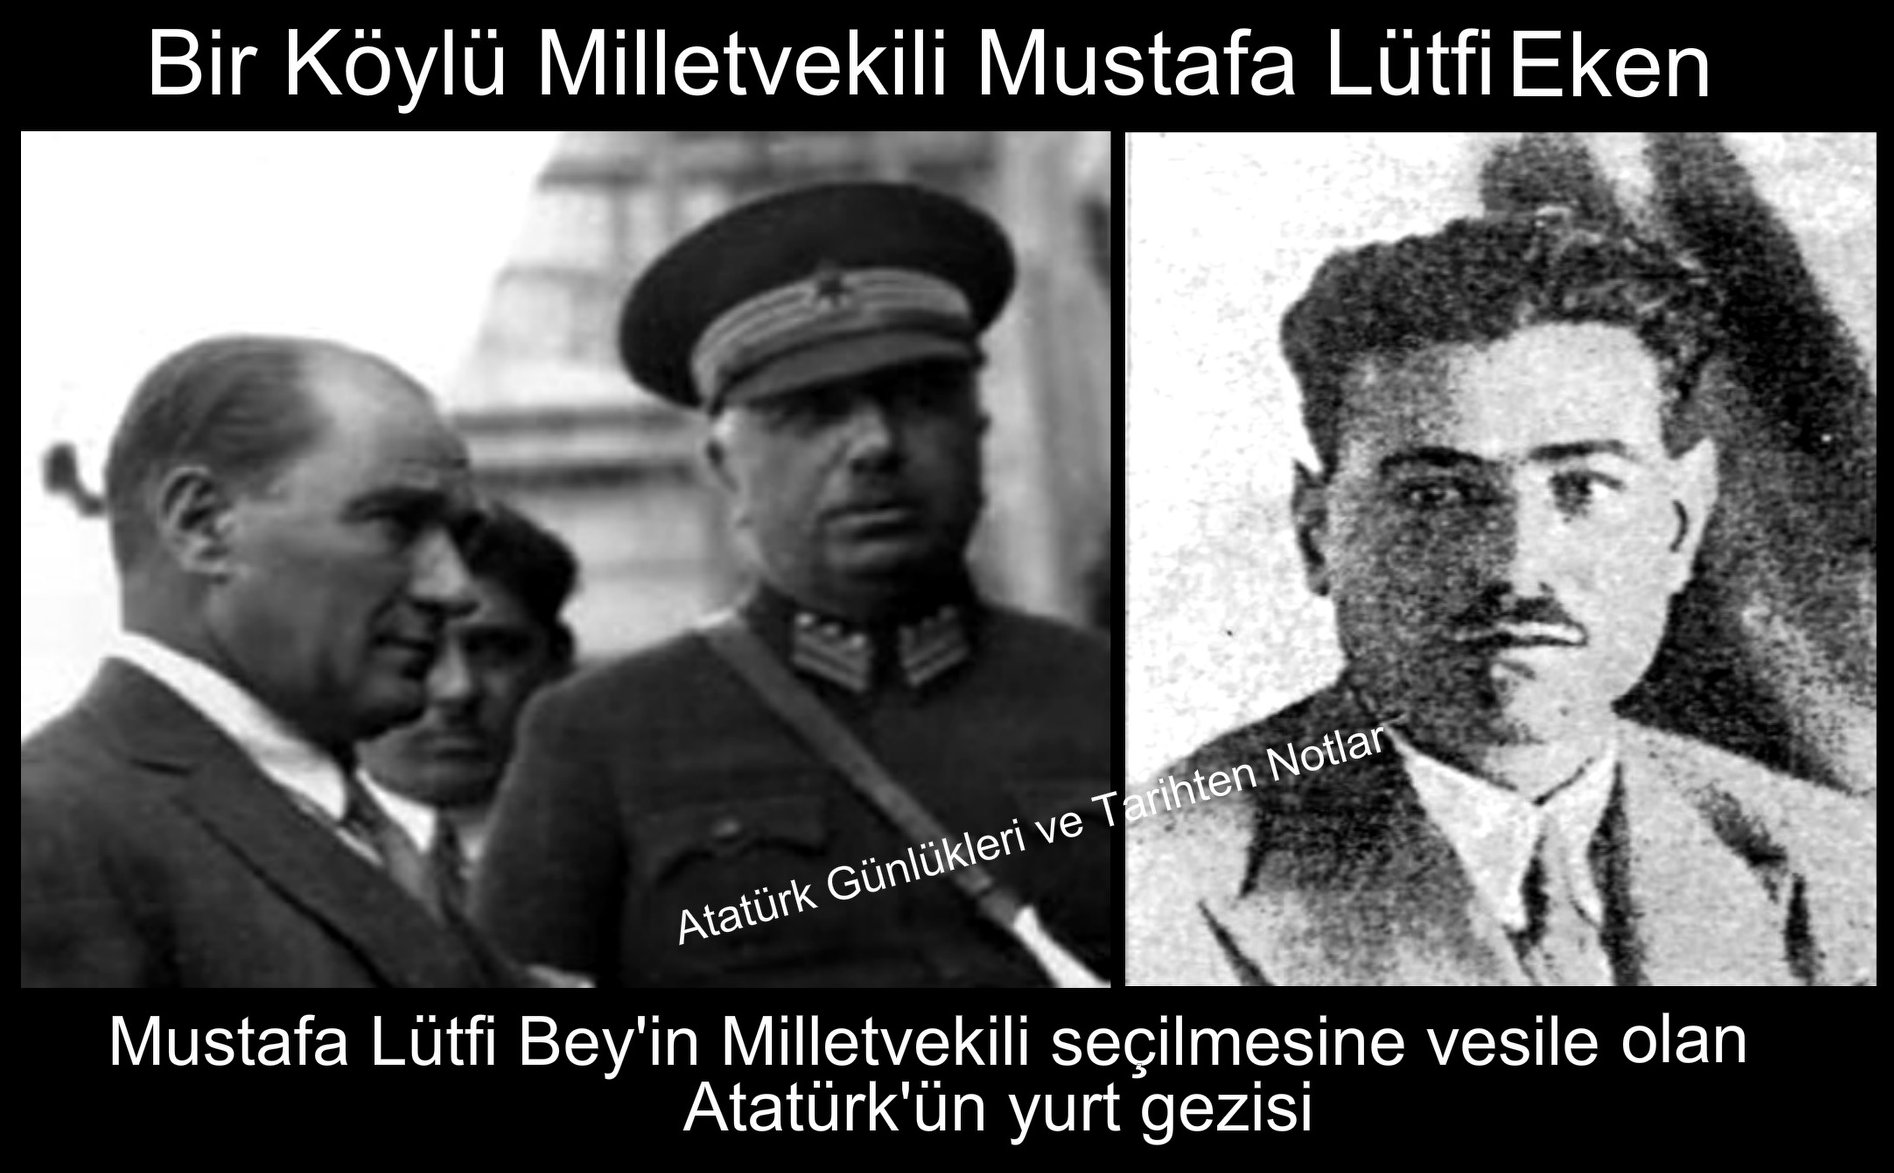 Atatürk döneminde aday olabilmenin ölçütleri